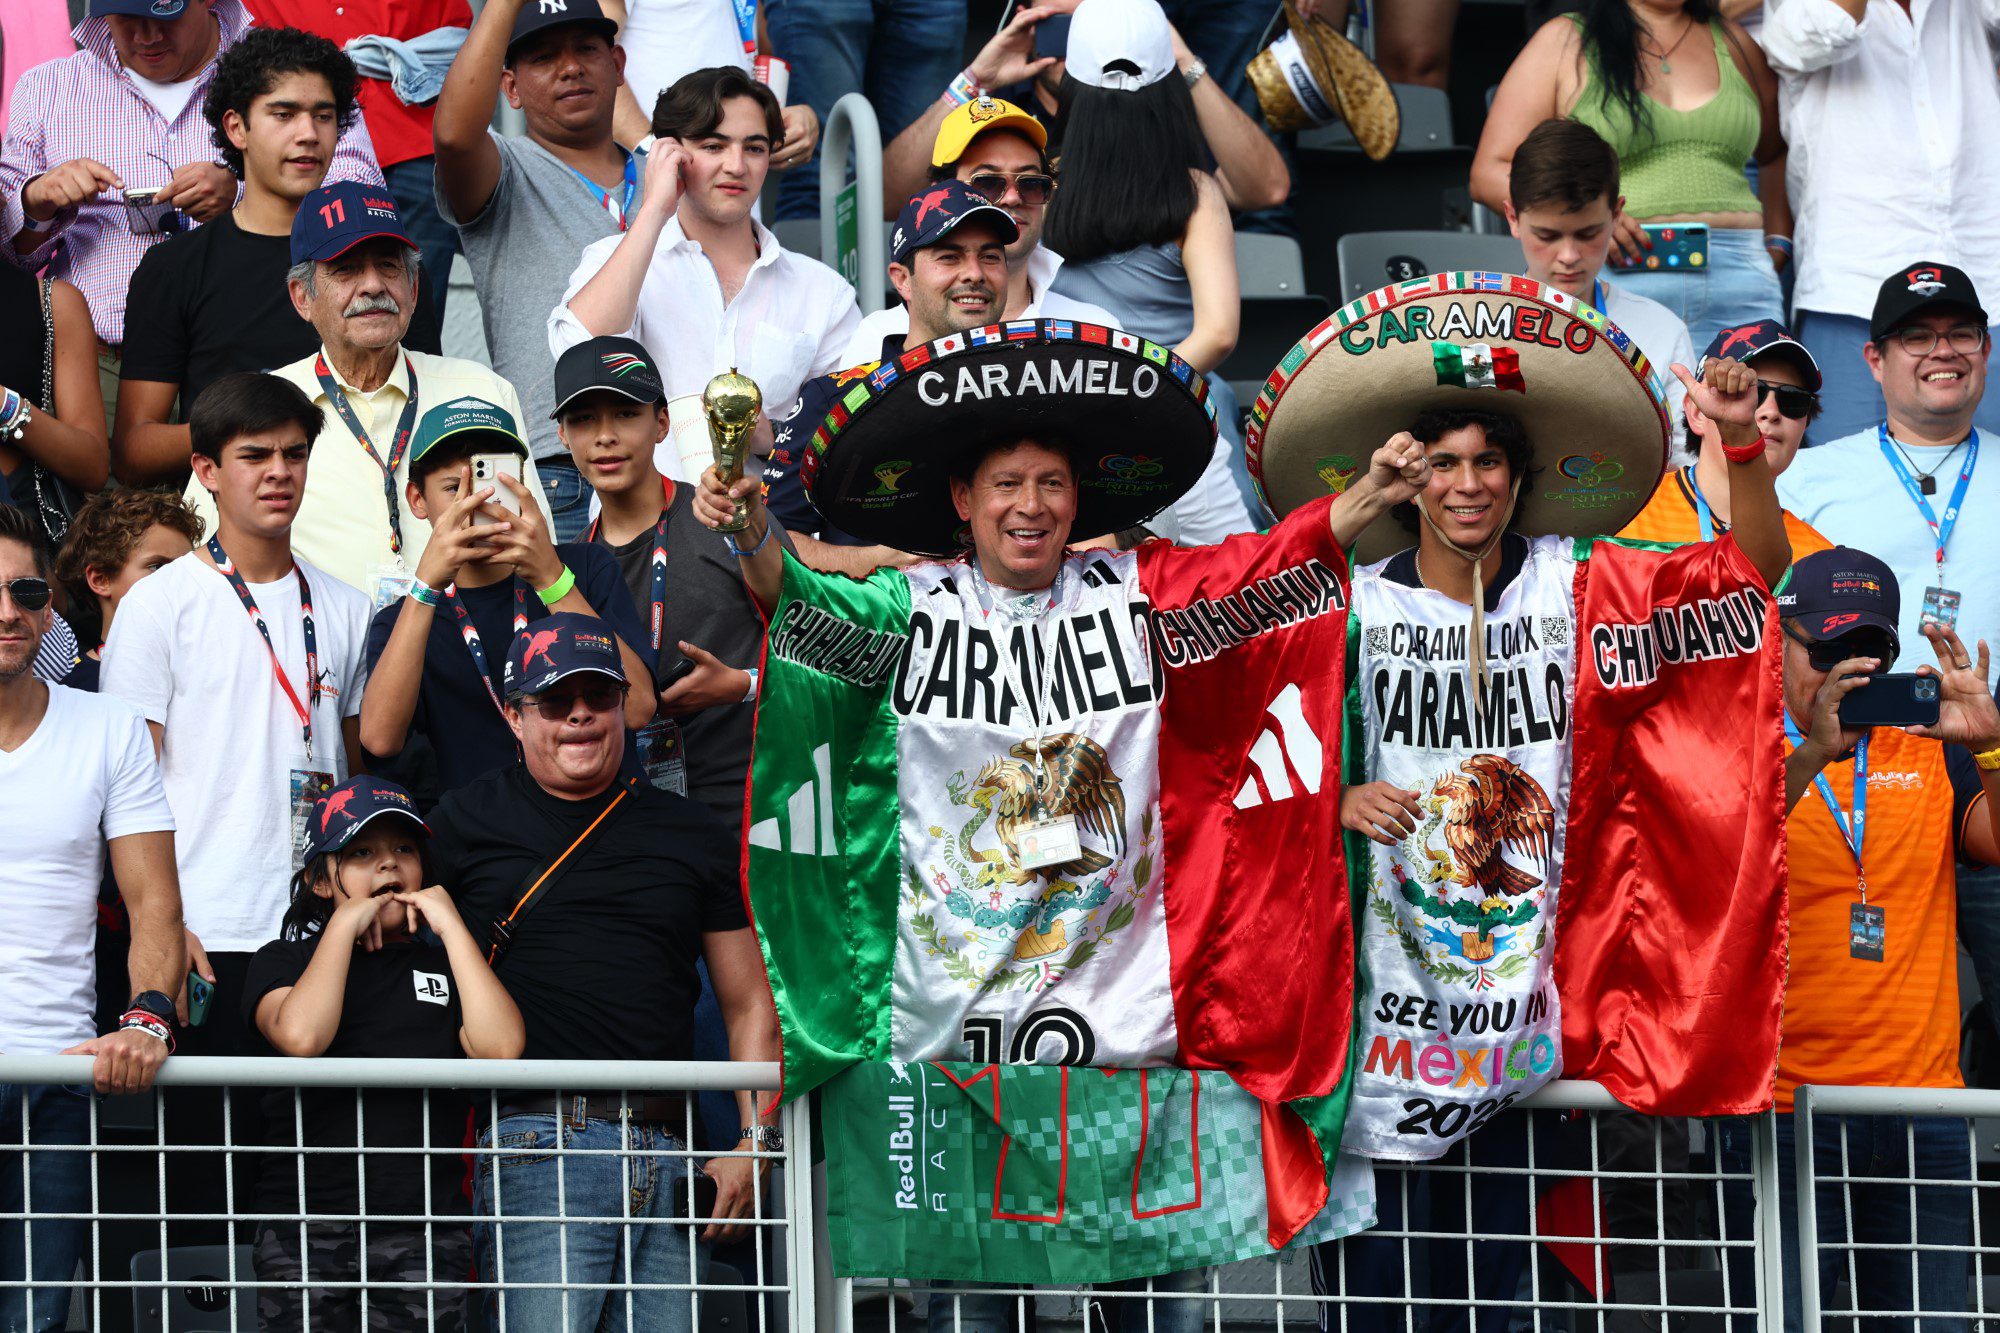 Fórmula 1: Max Verstappen domina treinos no GP do México antes da  qualificação - CNN Portugal